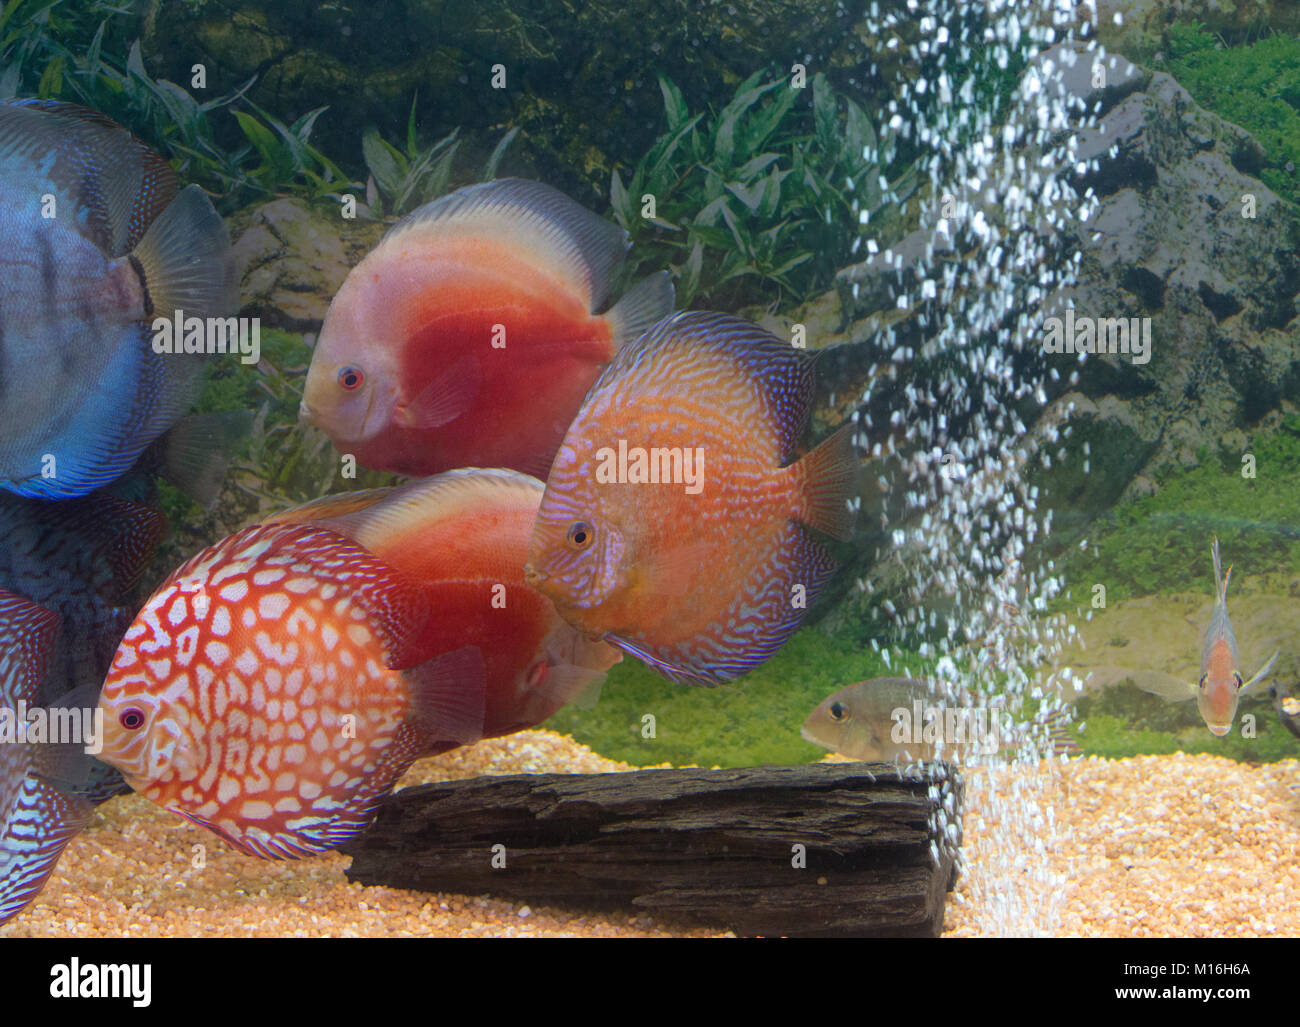 Poissons discus colorés dans l'aquarium close up Banque D'Images